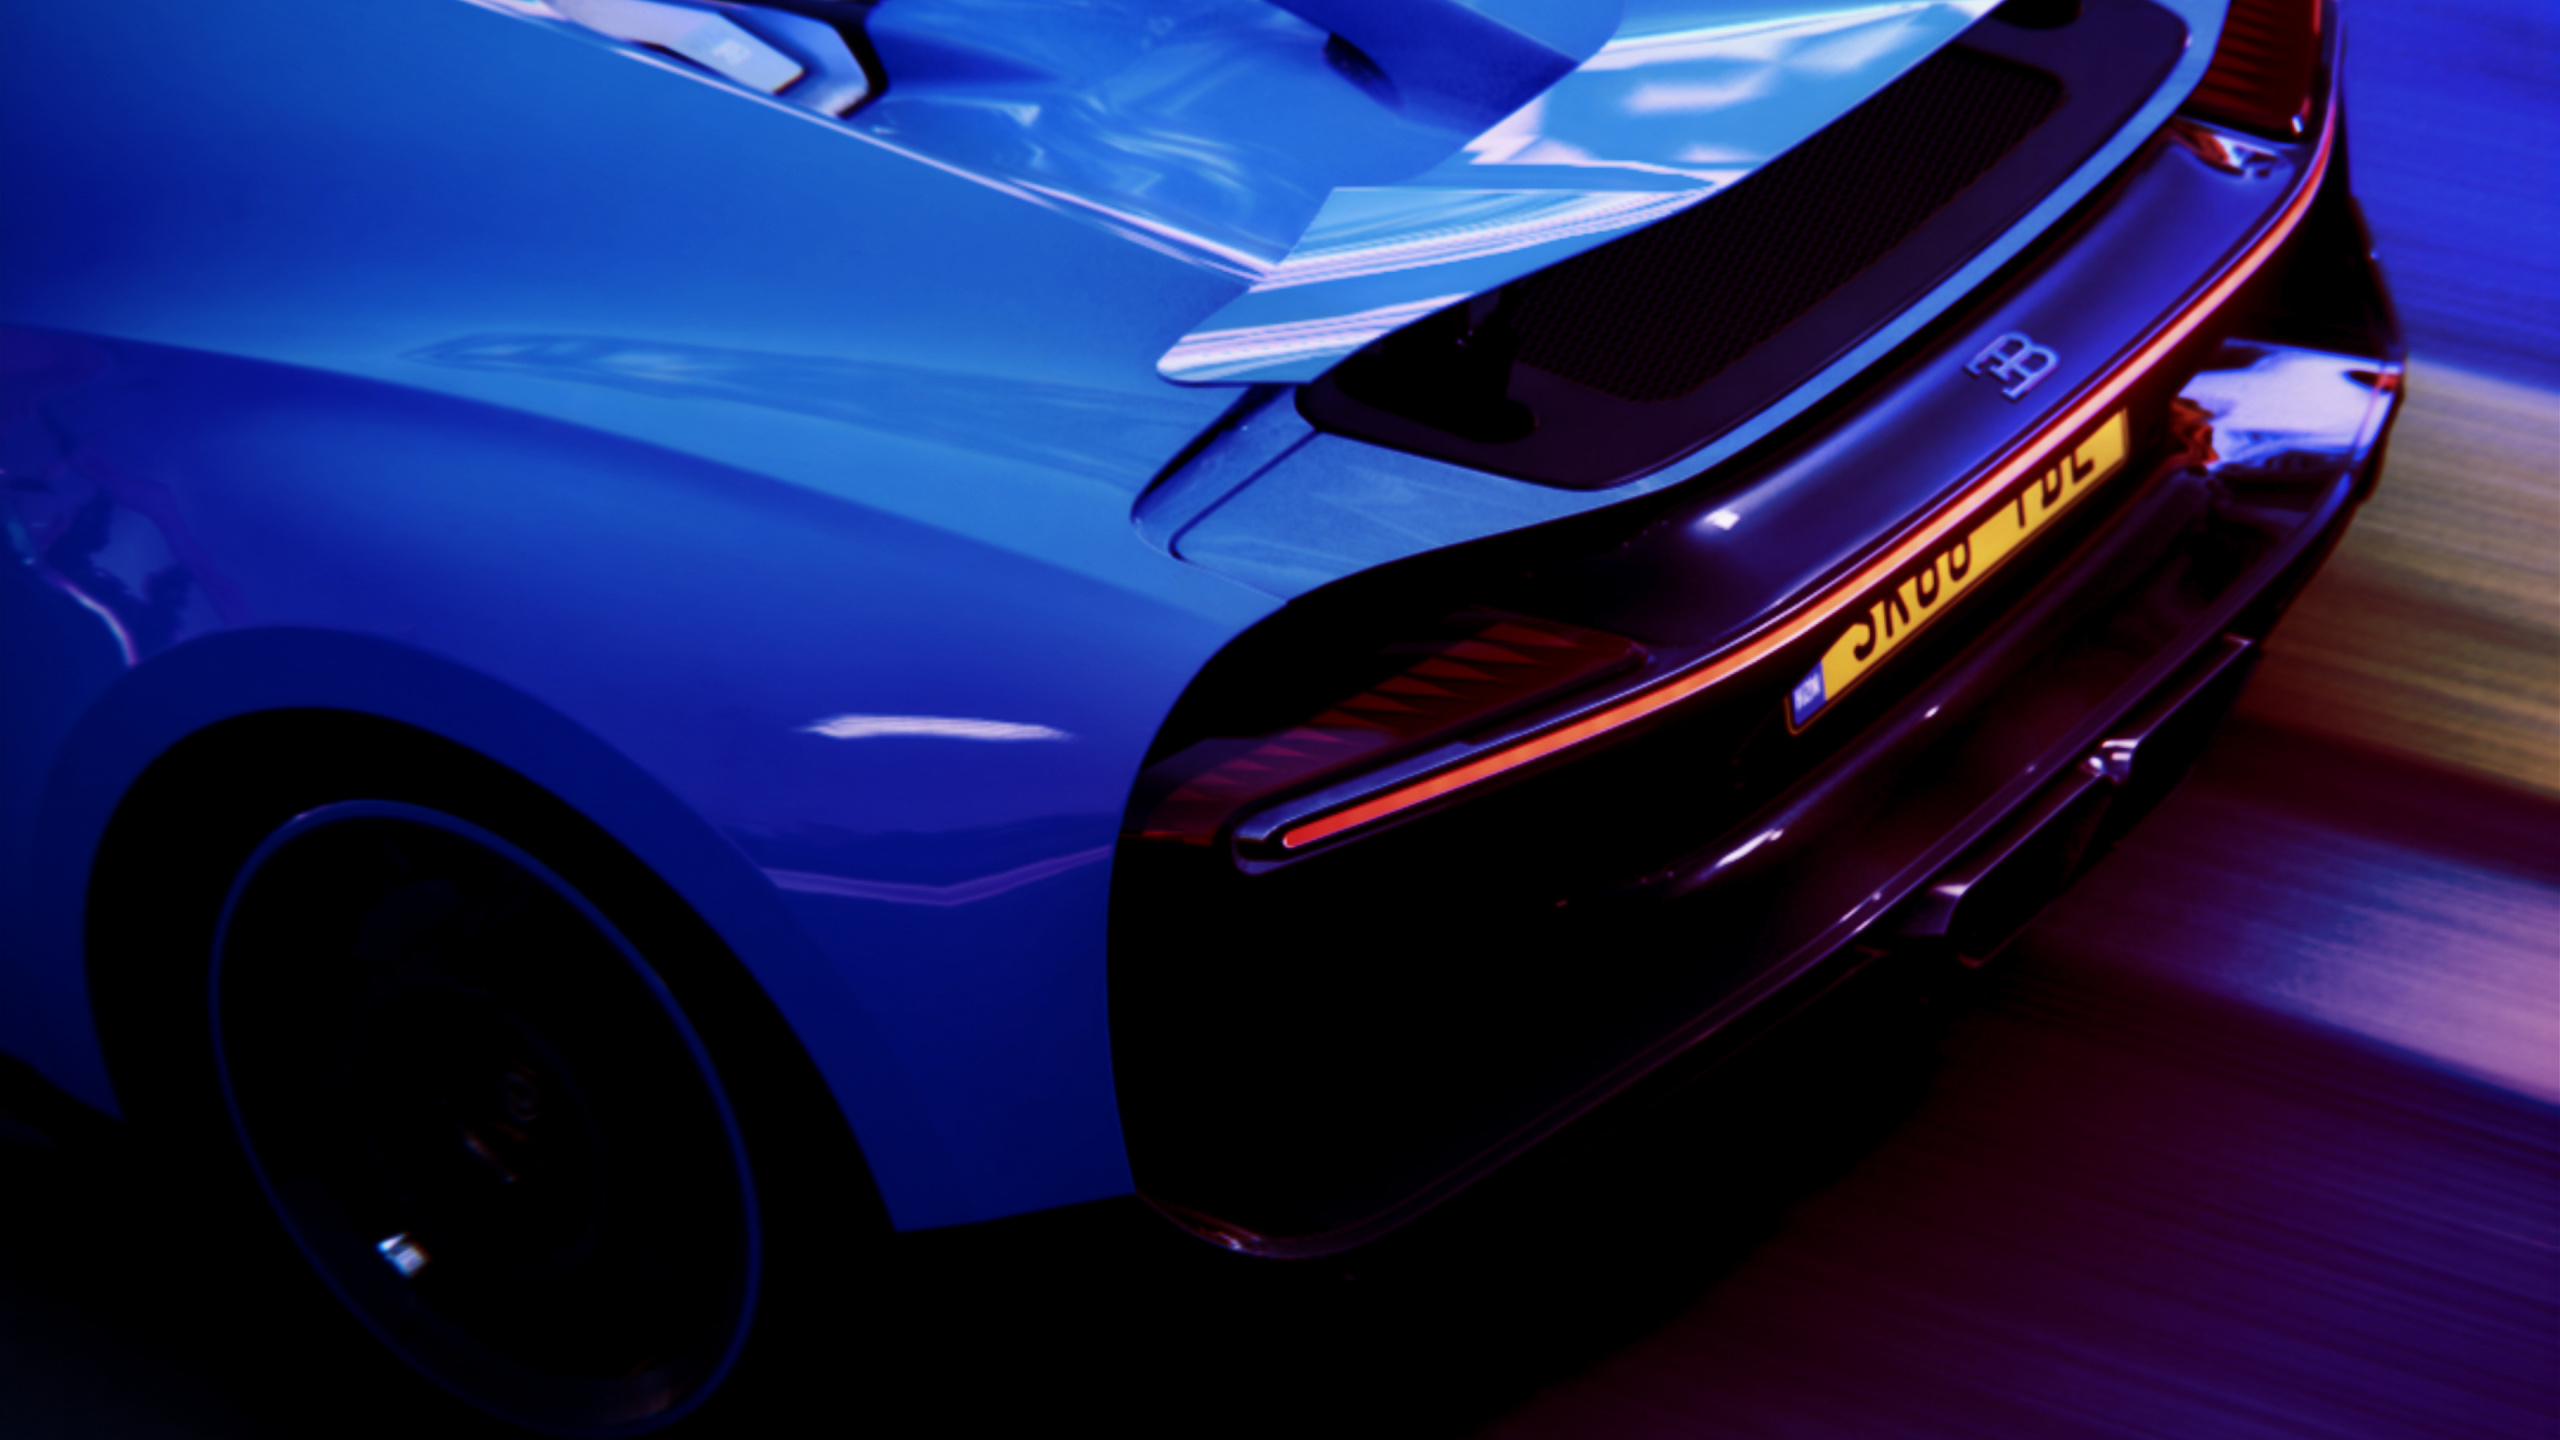 Blauer Porsche 911 Auf Schwarzem Hintergrund. Wallpaper in 2560x1440 Resolution